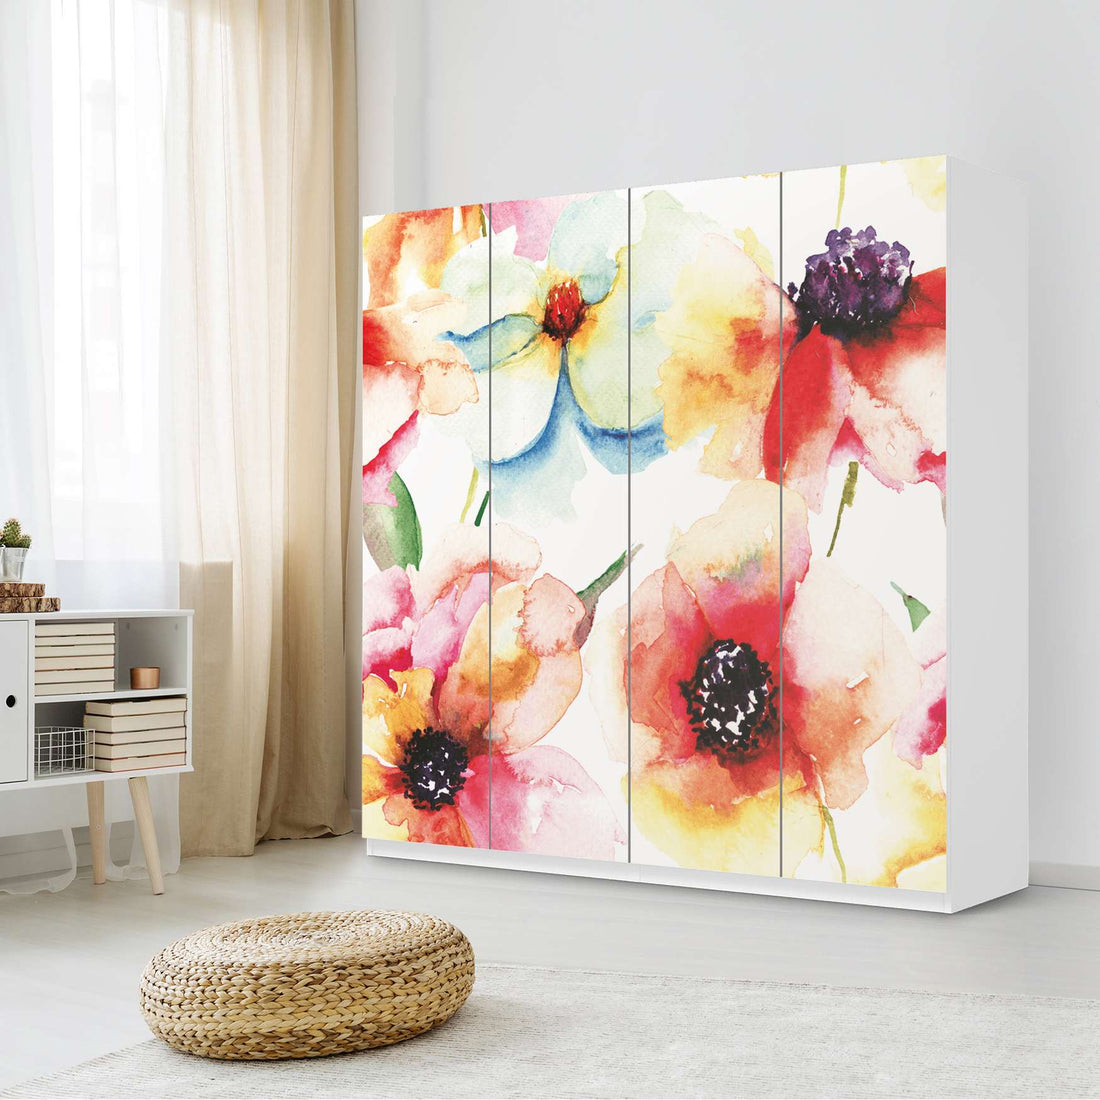 Klebefolie für Schränke Water Color Flowers - IKEA Pax Schrank 201 cm Höhe - 4 Türen - Schlafzimmer